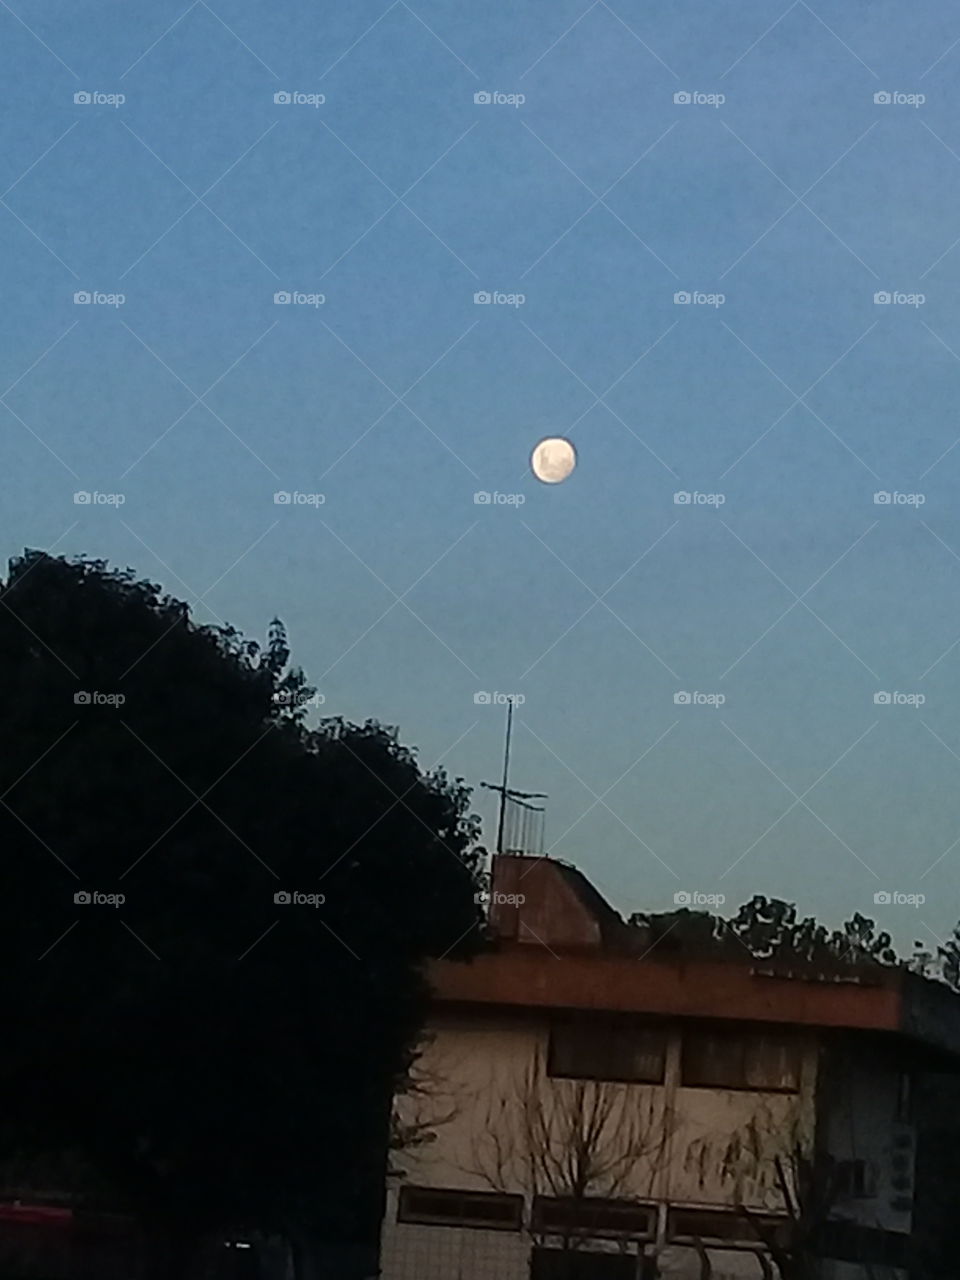 fotografía de una luna llena iluminando un cielo despejado de otoño sobre un pueblo de la provincia de Buenos Aires.